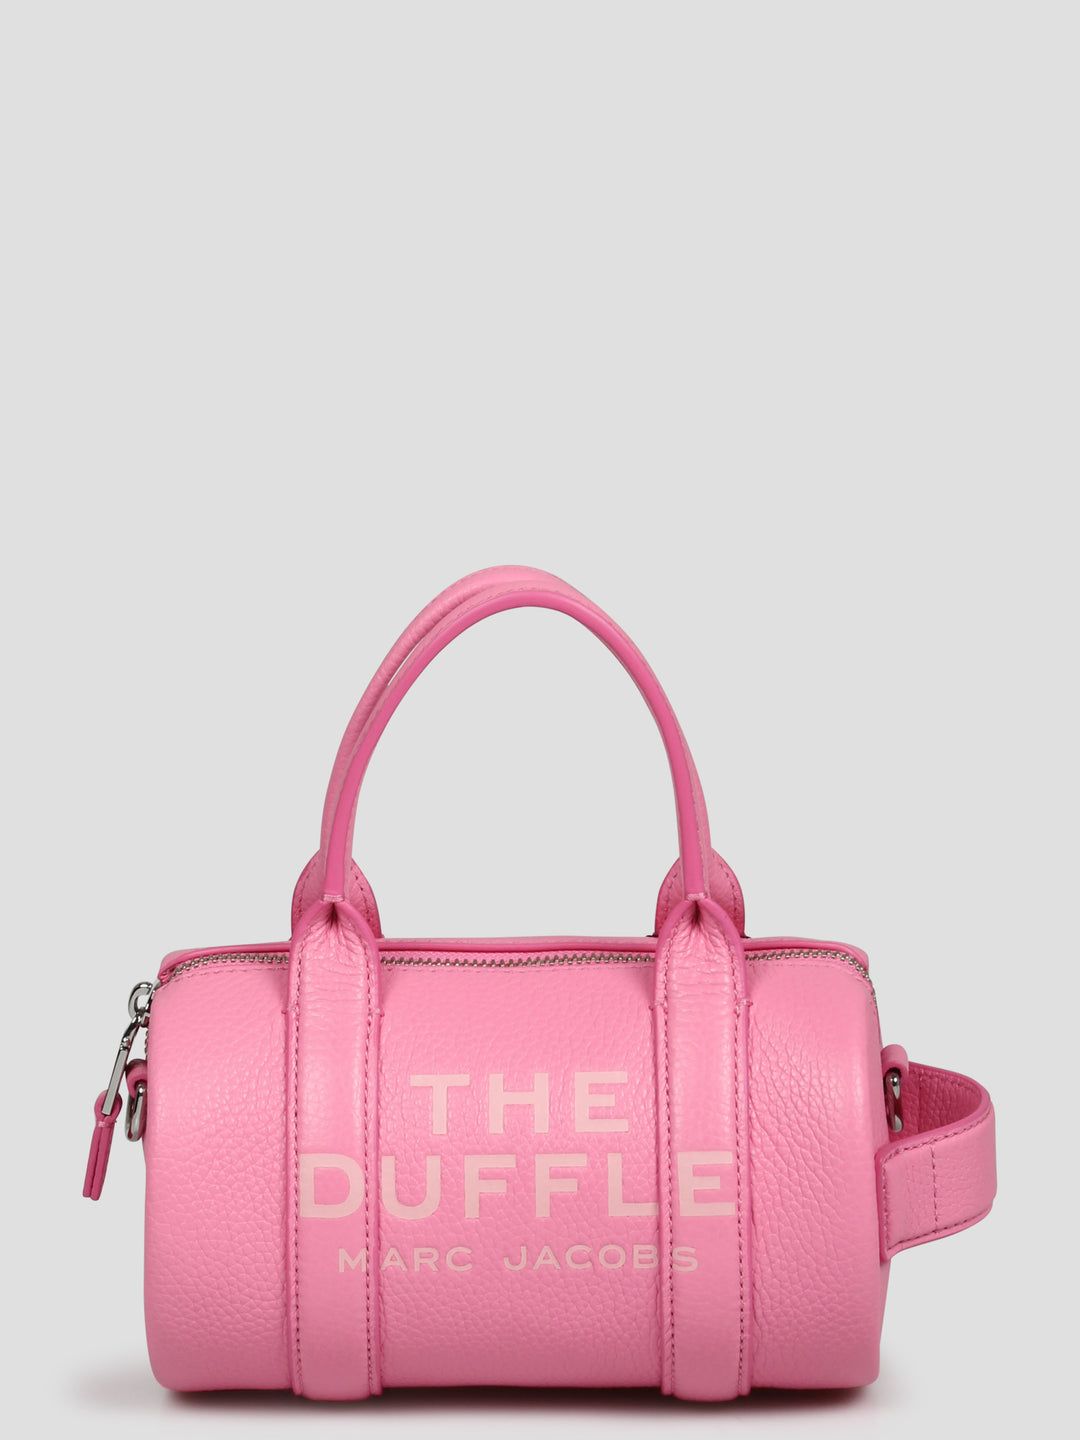 The leather mini duffle bag